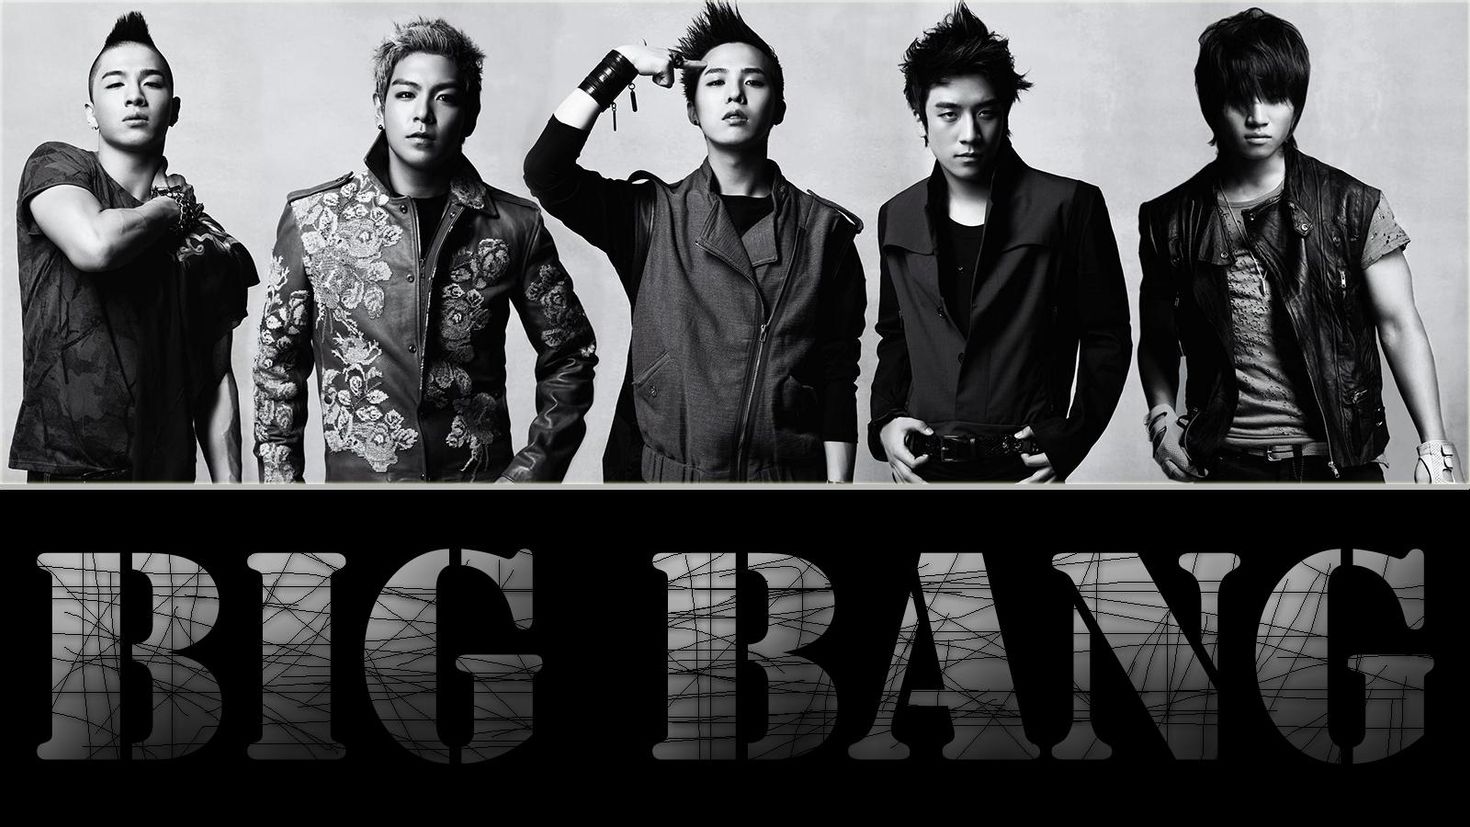 Bigbang bang bang bang. Биг бэнг группа. Бигбенг кпоп. Биг бенг корейская группа. BIGBANG 4.4.